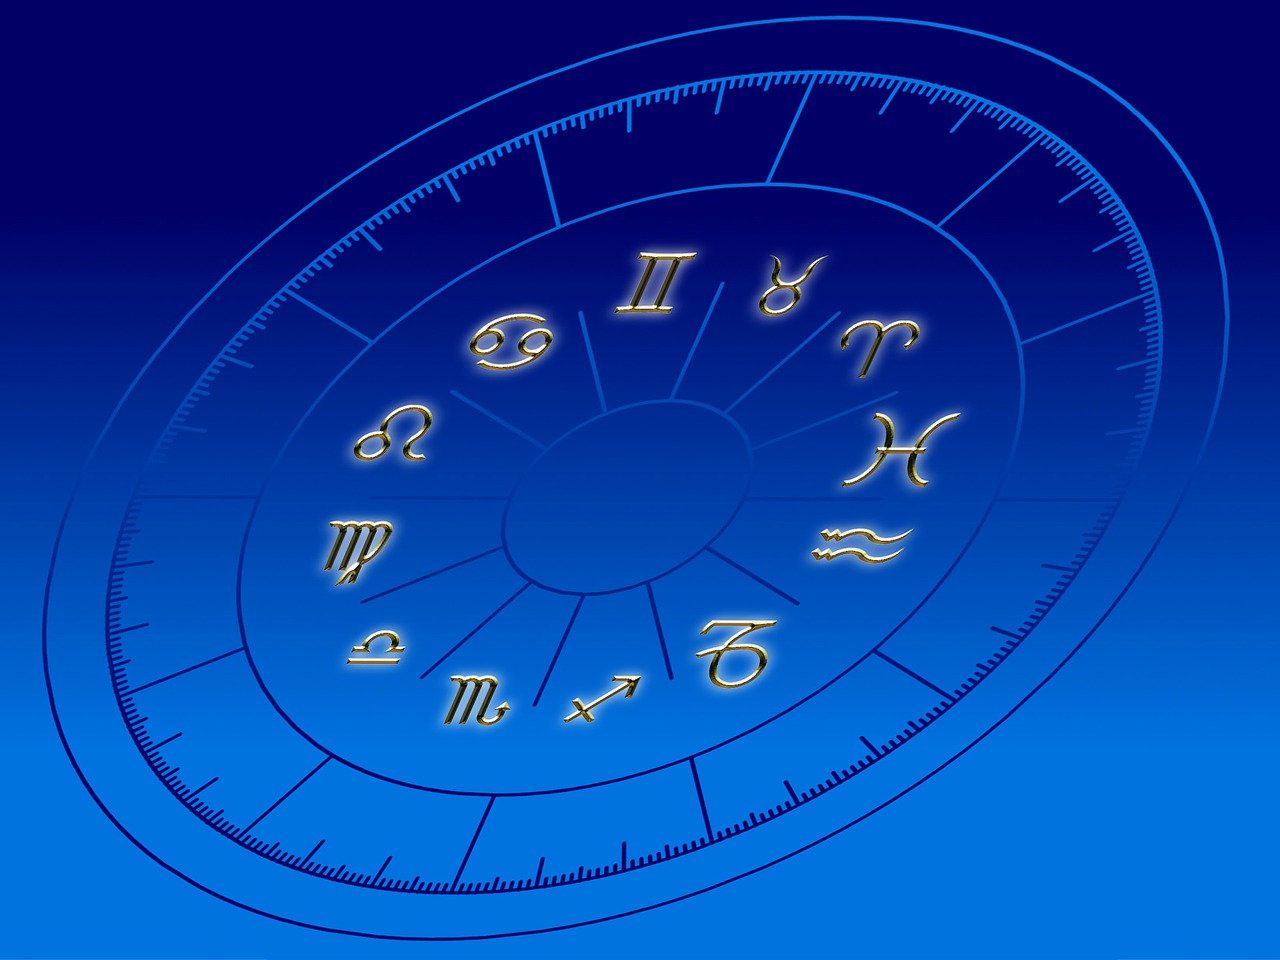 il existe douze signes du zodiaque